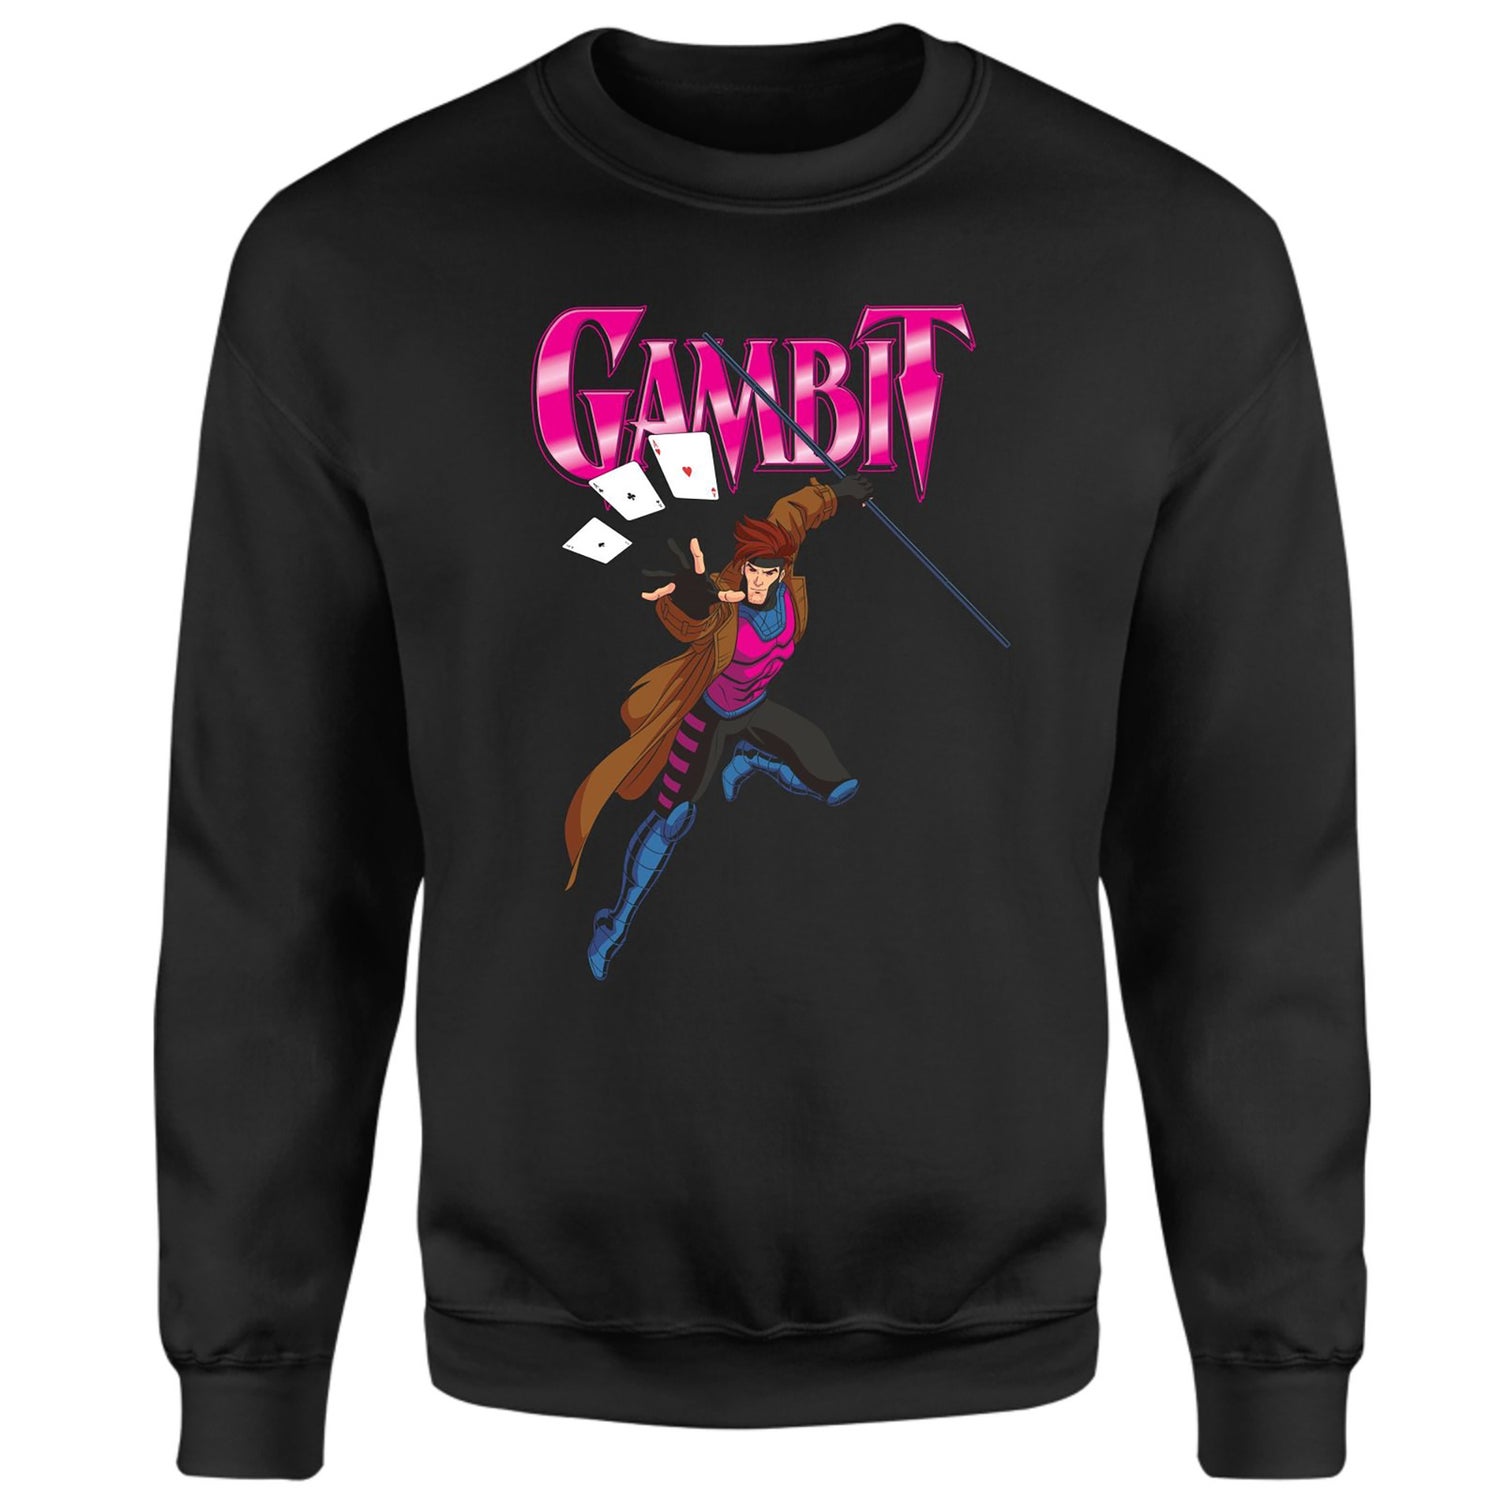 X-Men '97 Gambit Sweatshirt - Black